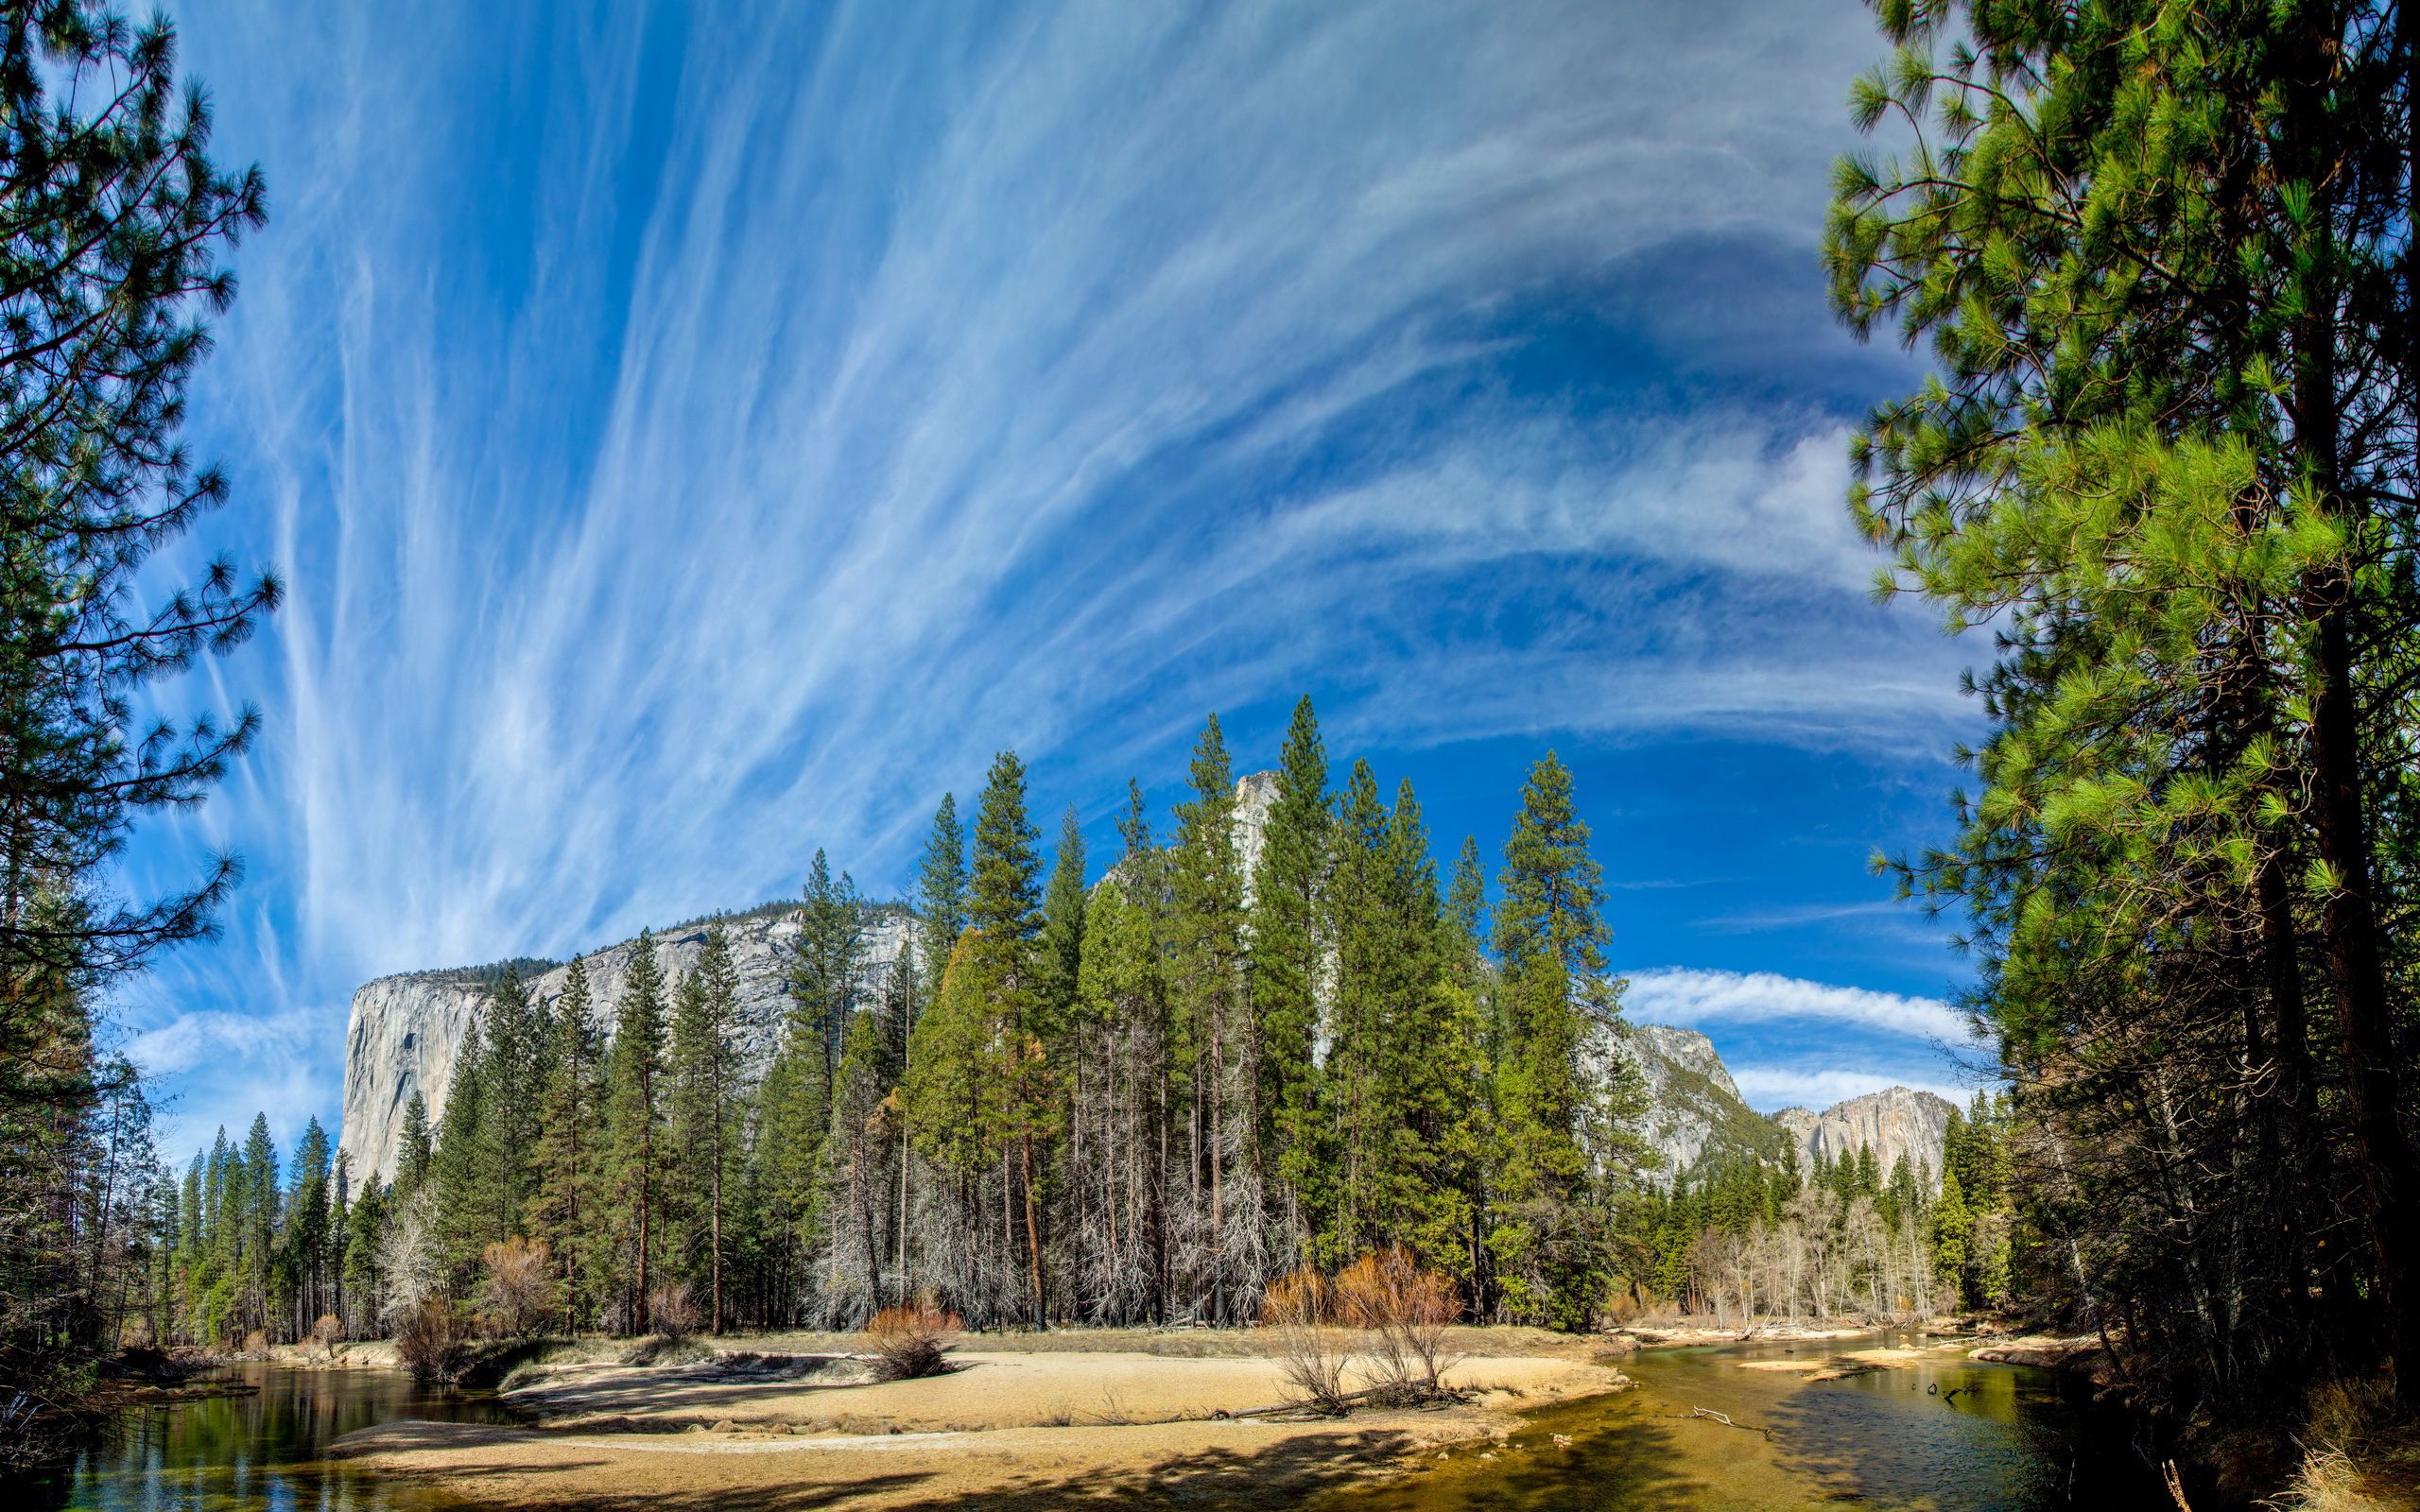 Популярные заставки и фоны Yosemite National Park на компьютер